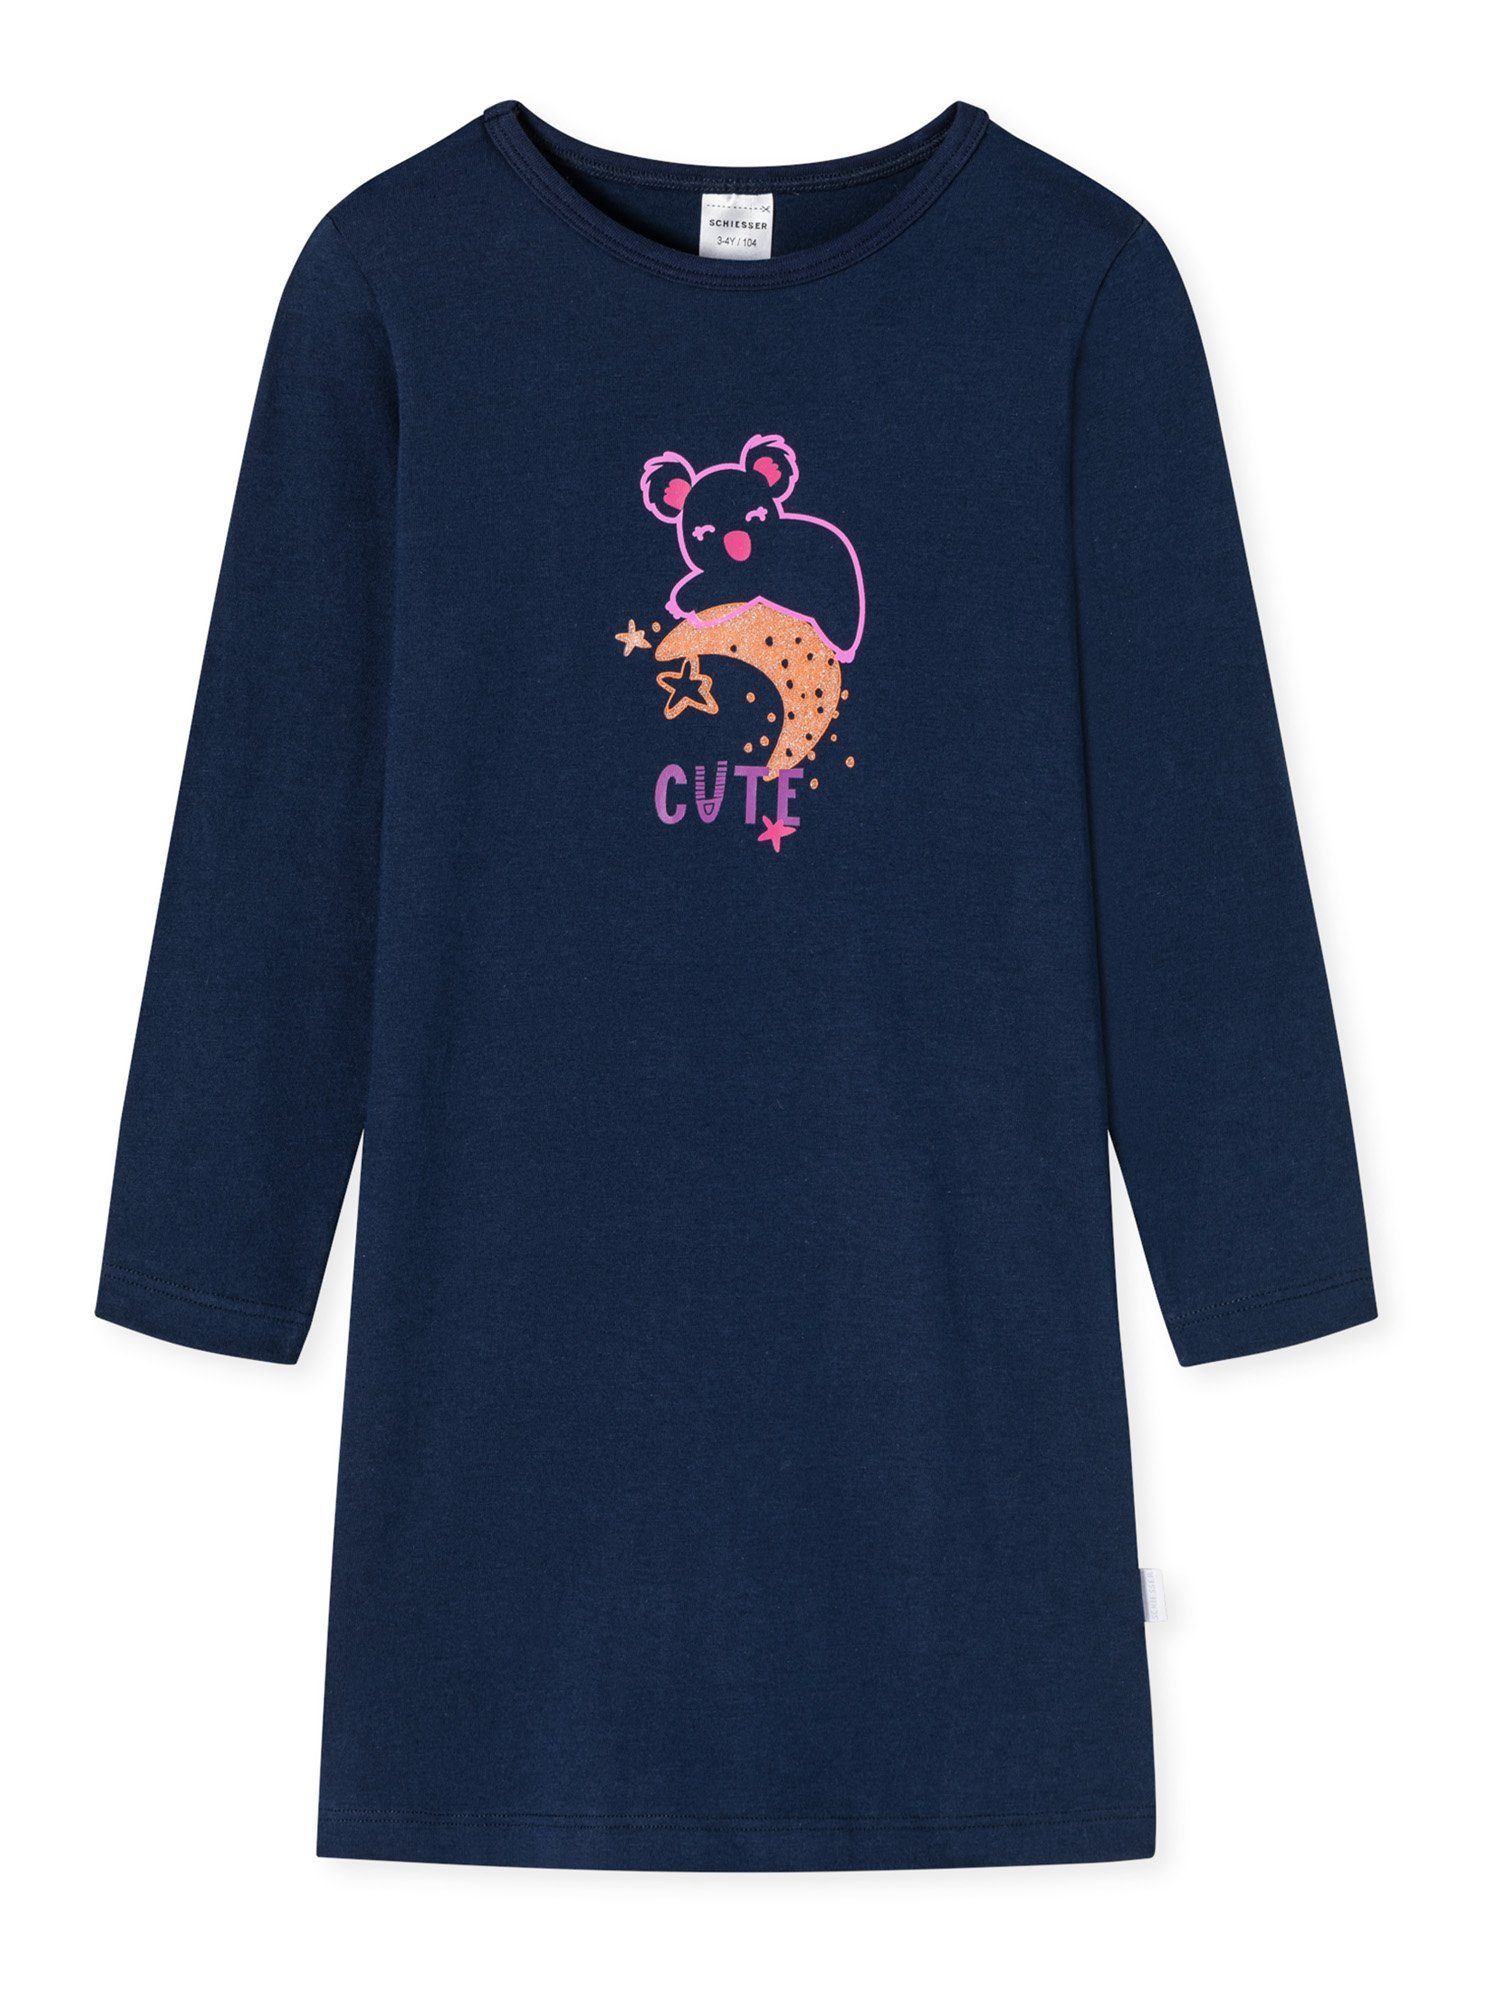 Schiesser Nachthemd Girls World Nacht-hemd schlafmode sleepwear